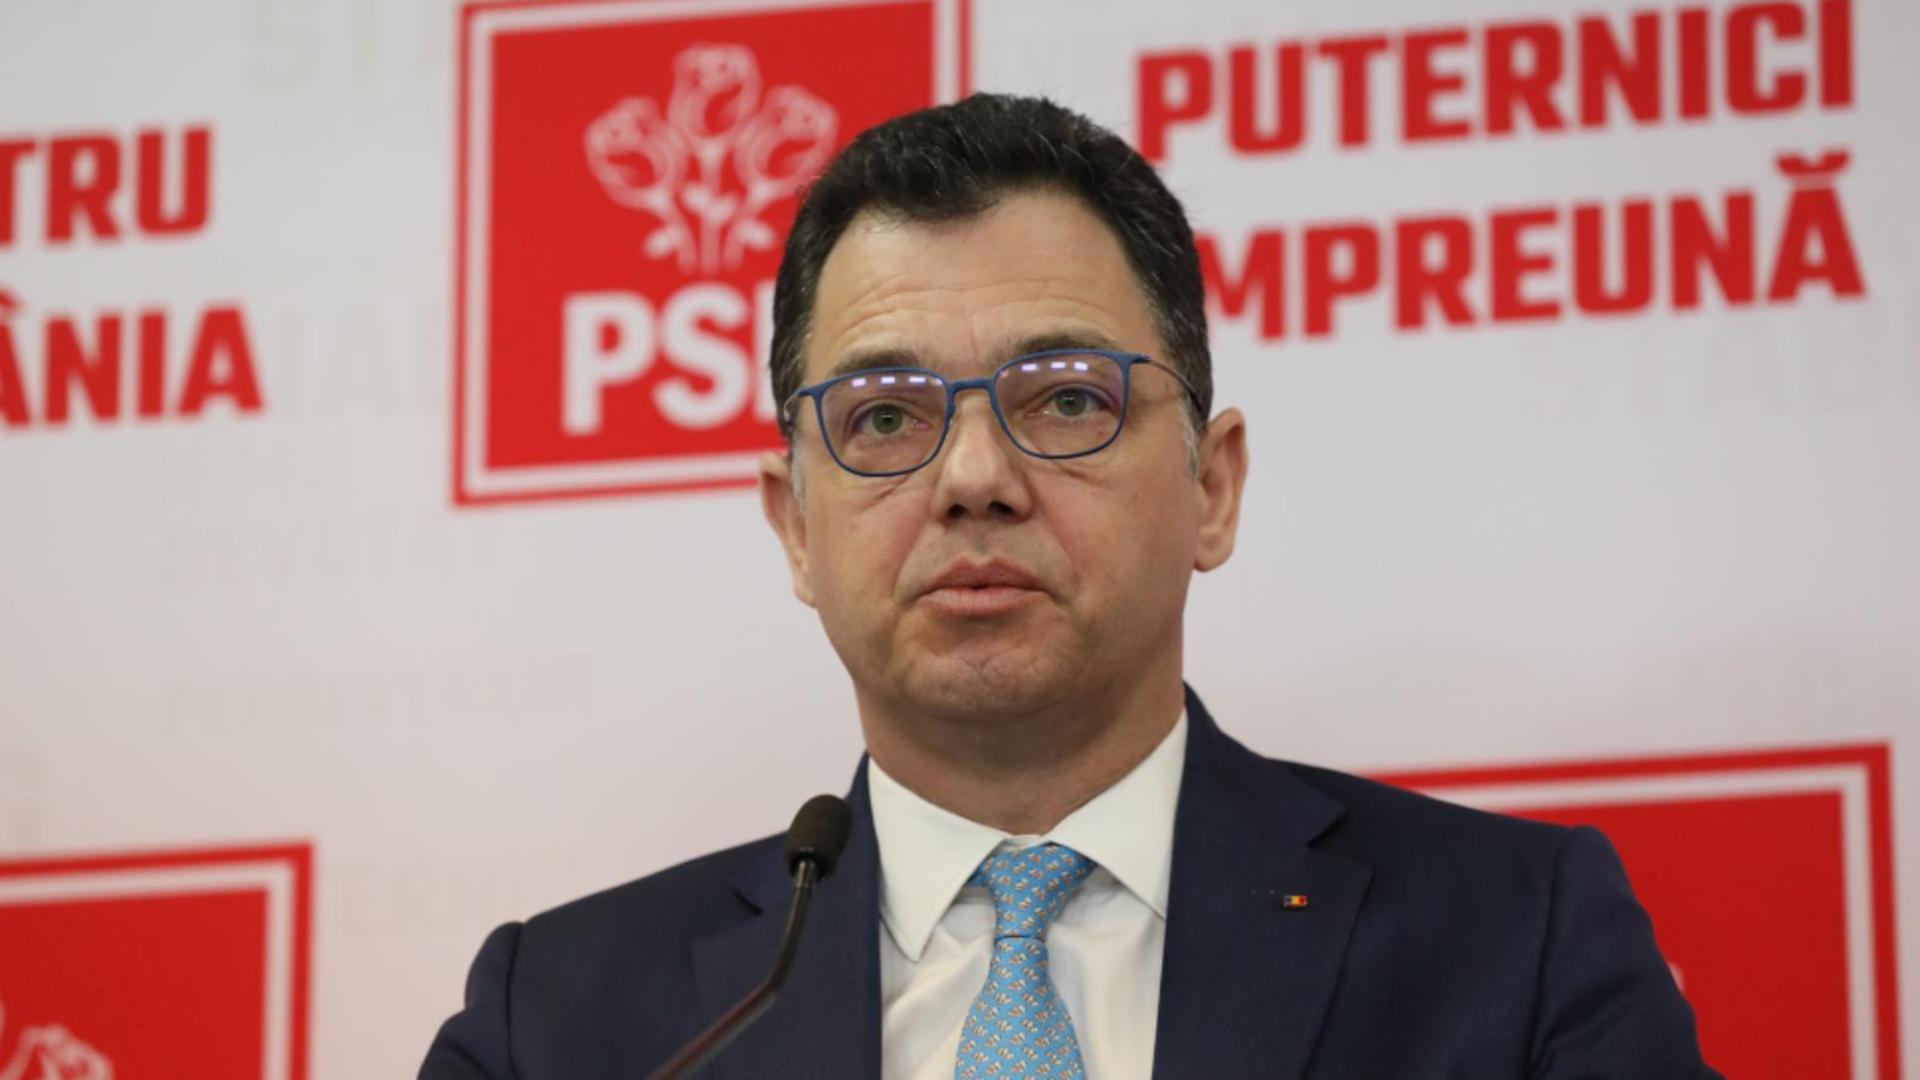 Ștefan Radu Oprea, senator, purtător de cuvânt PSD